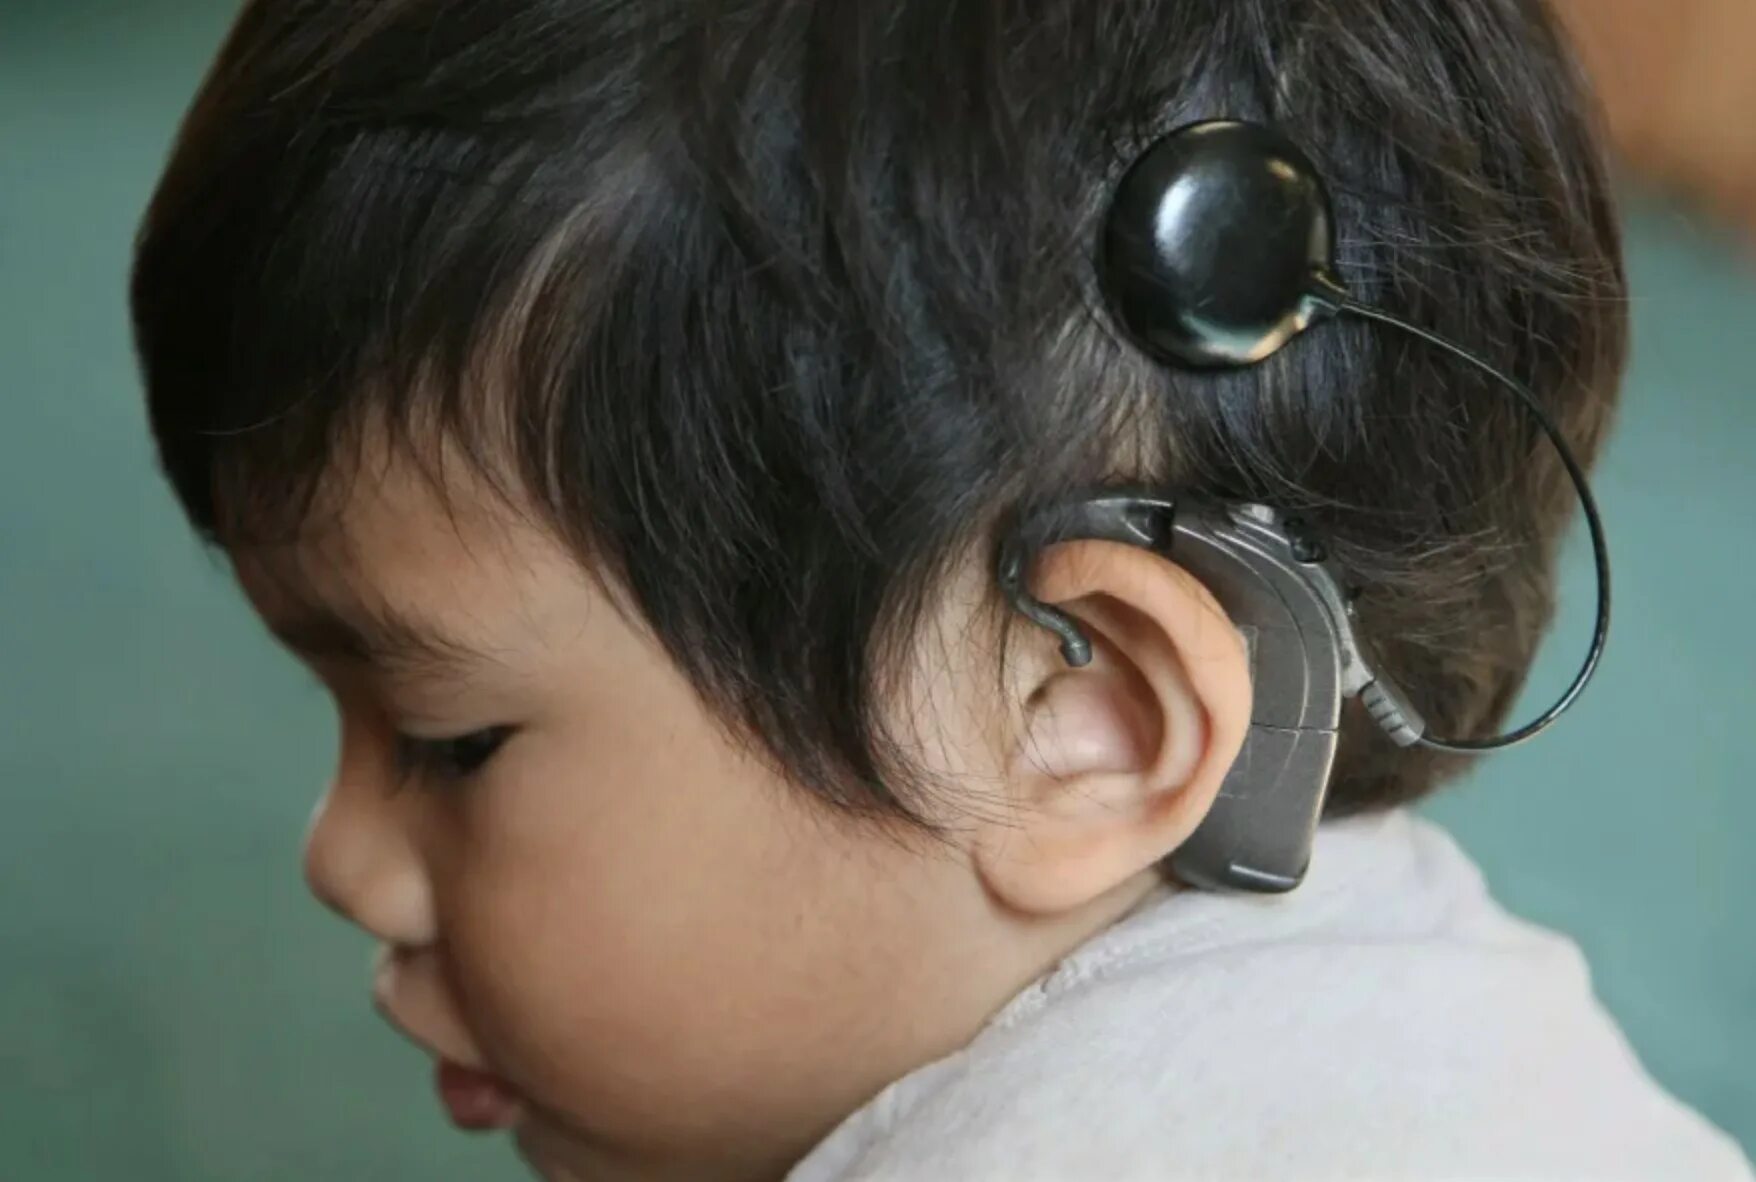 Кохлеарная имплантация Cochlear. Аппарат для глухих кохлеарная имплантация. Кохлеарный имплант Кохлер. Дети с нарушением слуха..